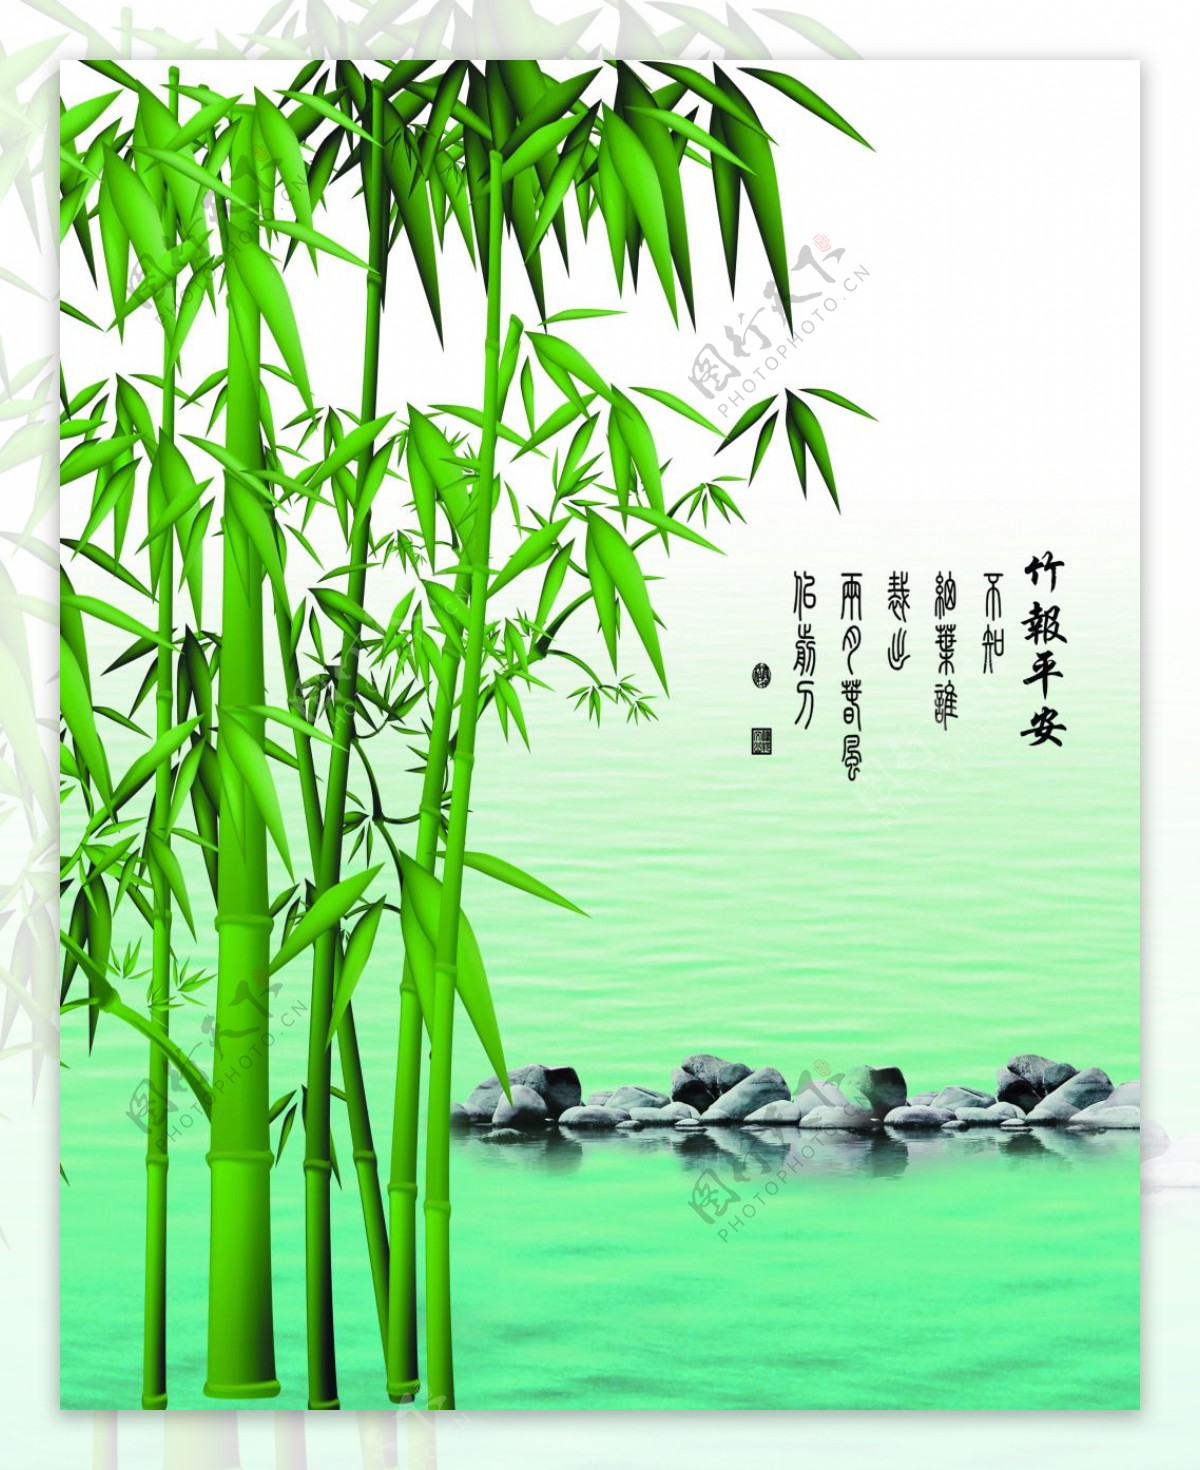 竹子背景装饰画